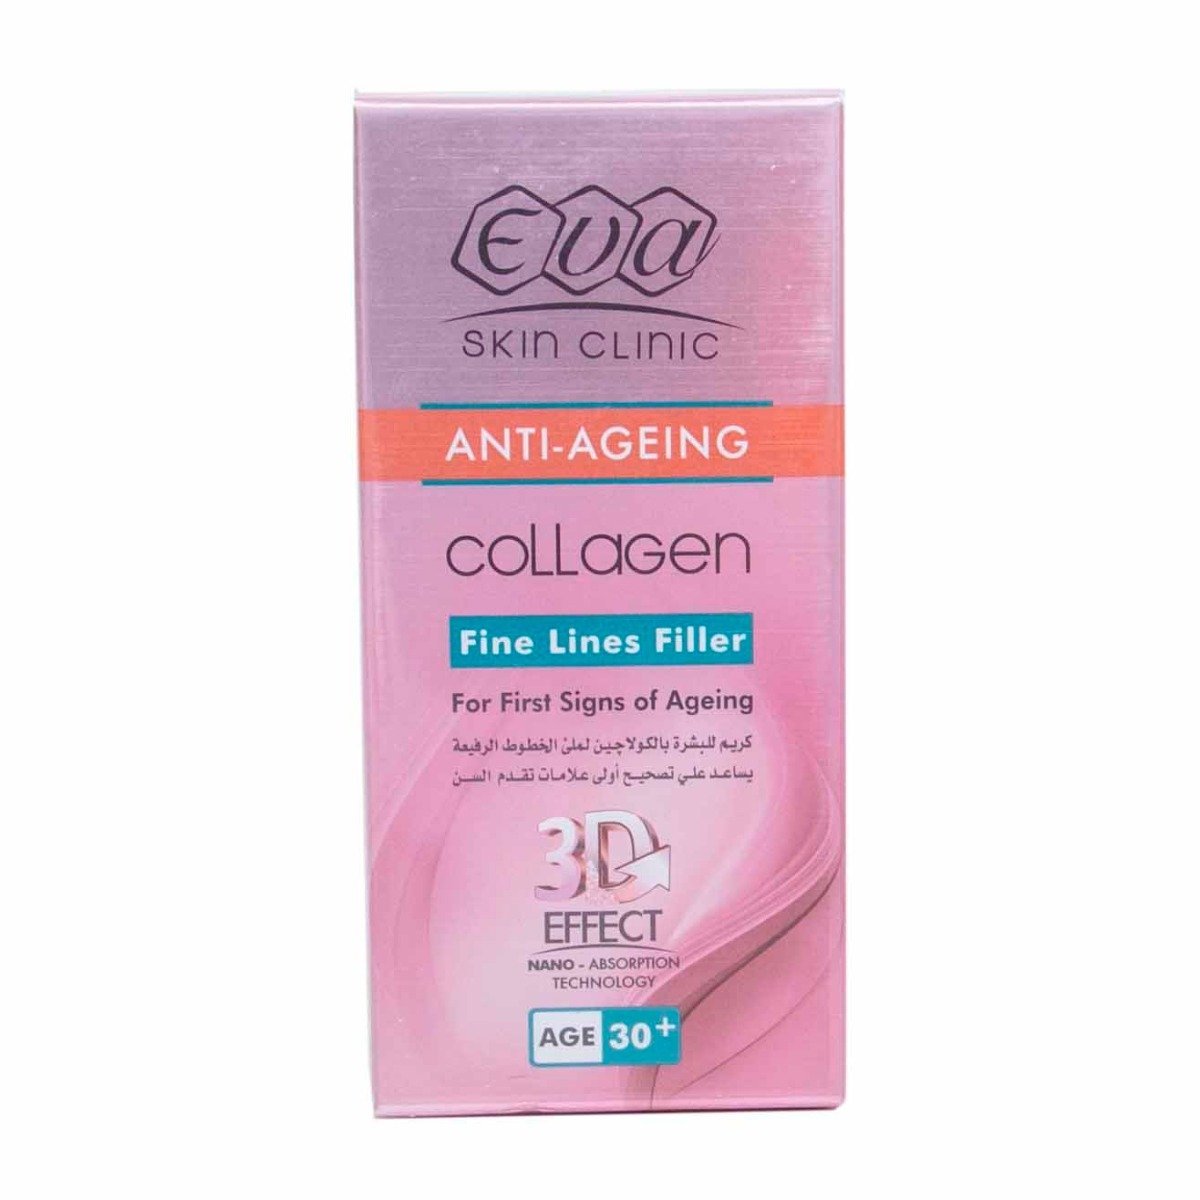 Eva Anti-Ageing Collagen Fine Lines Filler Age 30+ - 50ml - Bloom Pharmacy